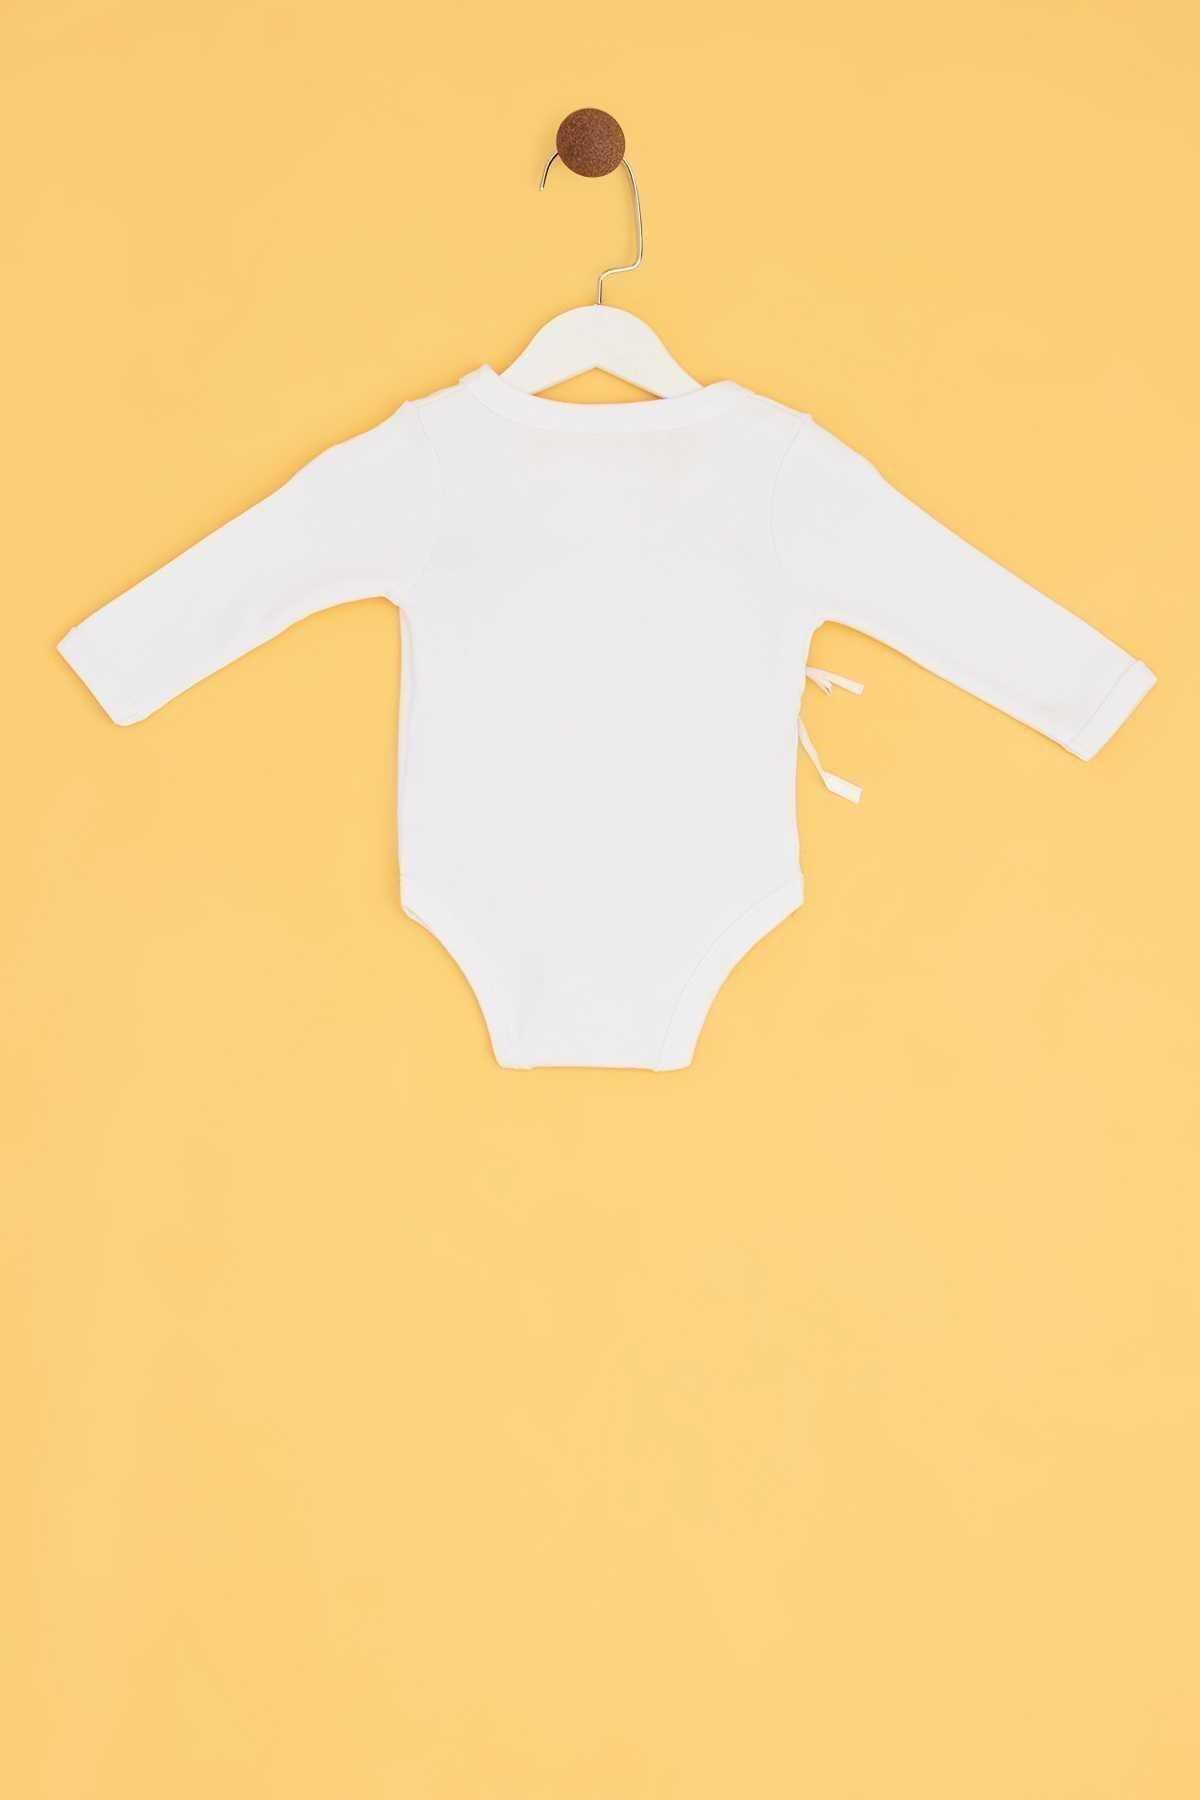 ست لباس خروجی بیمارستان نوزاد سفید برند BG Baby